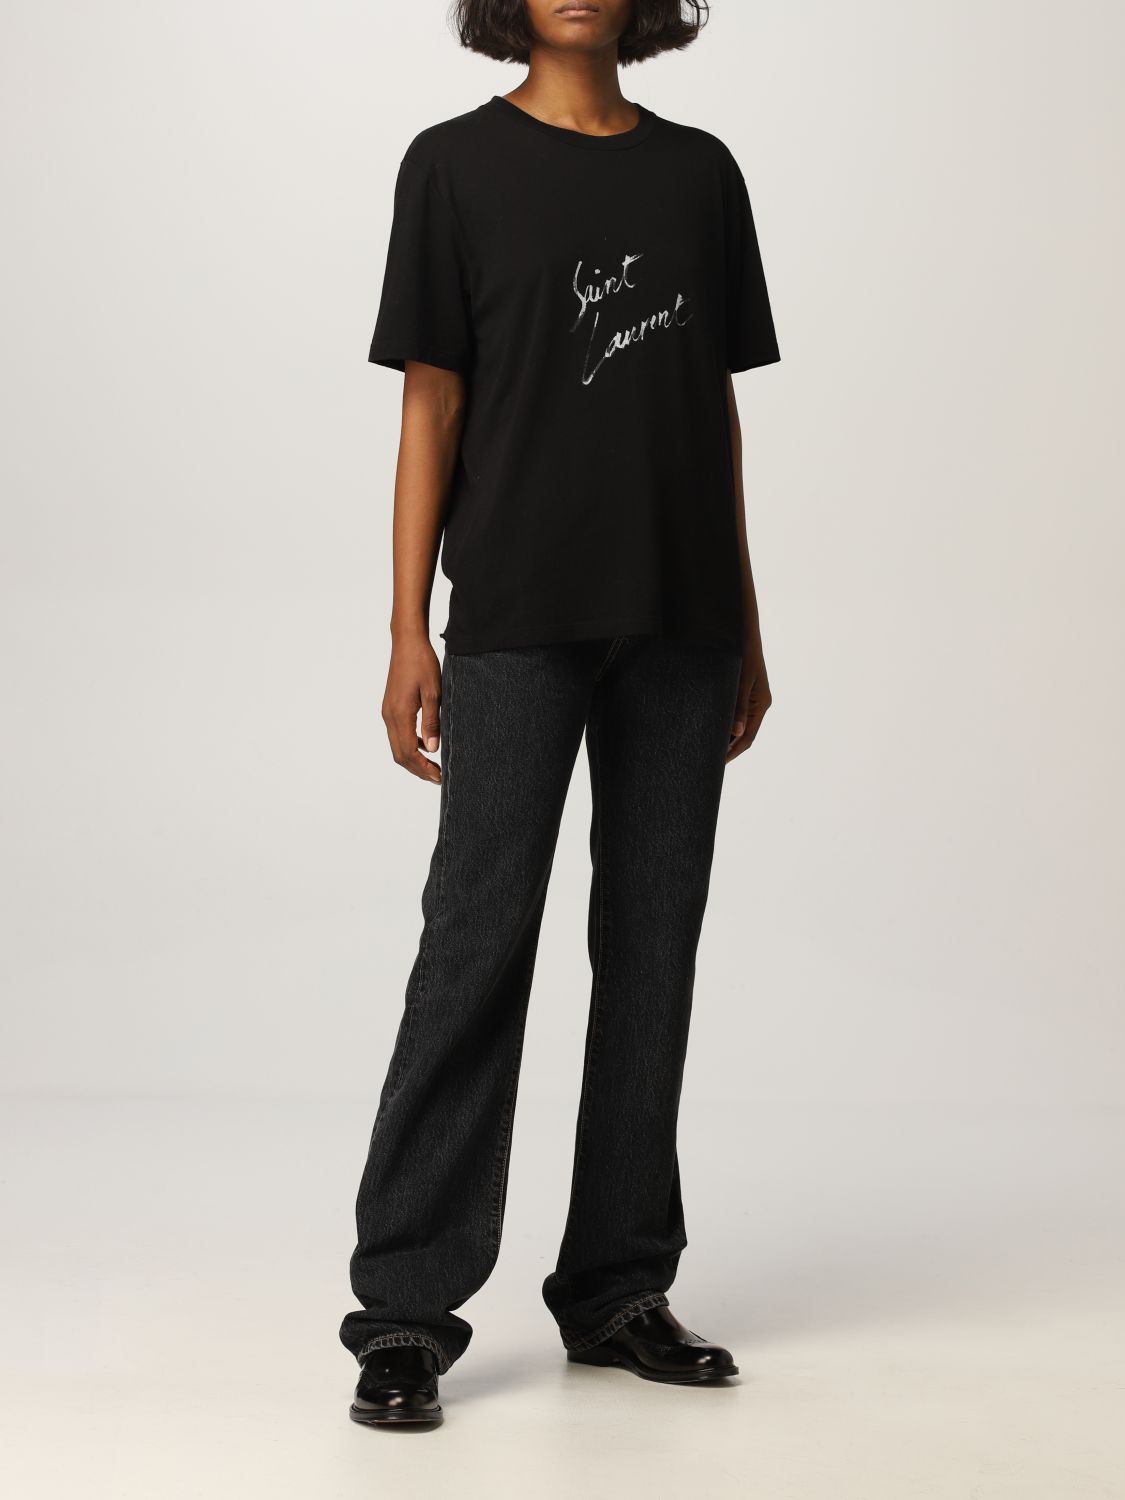 Camiseta Saint Laurent: Camiseta mujer Saint Laurent negro 2